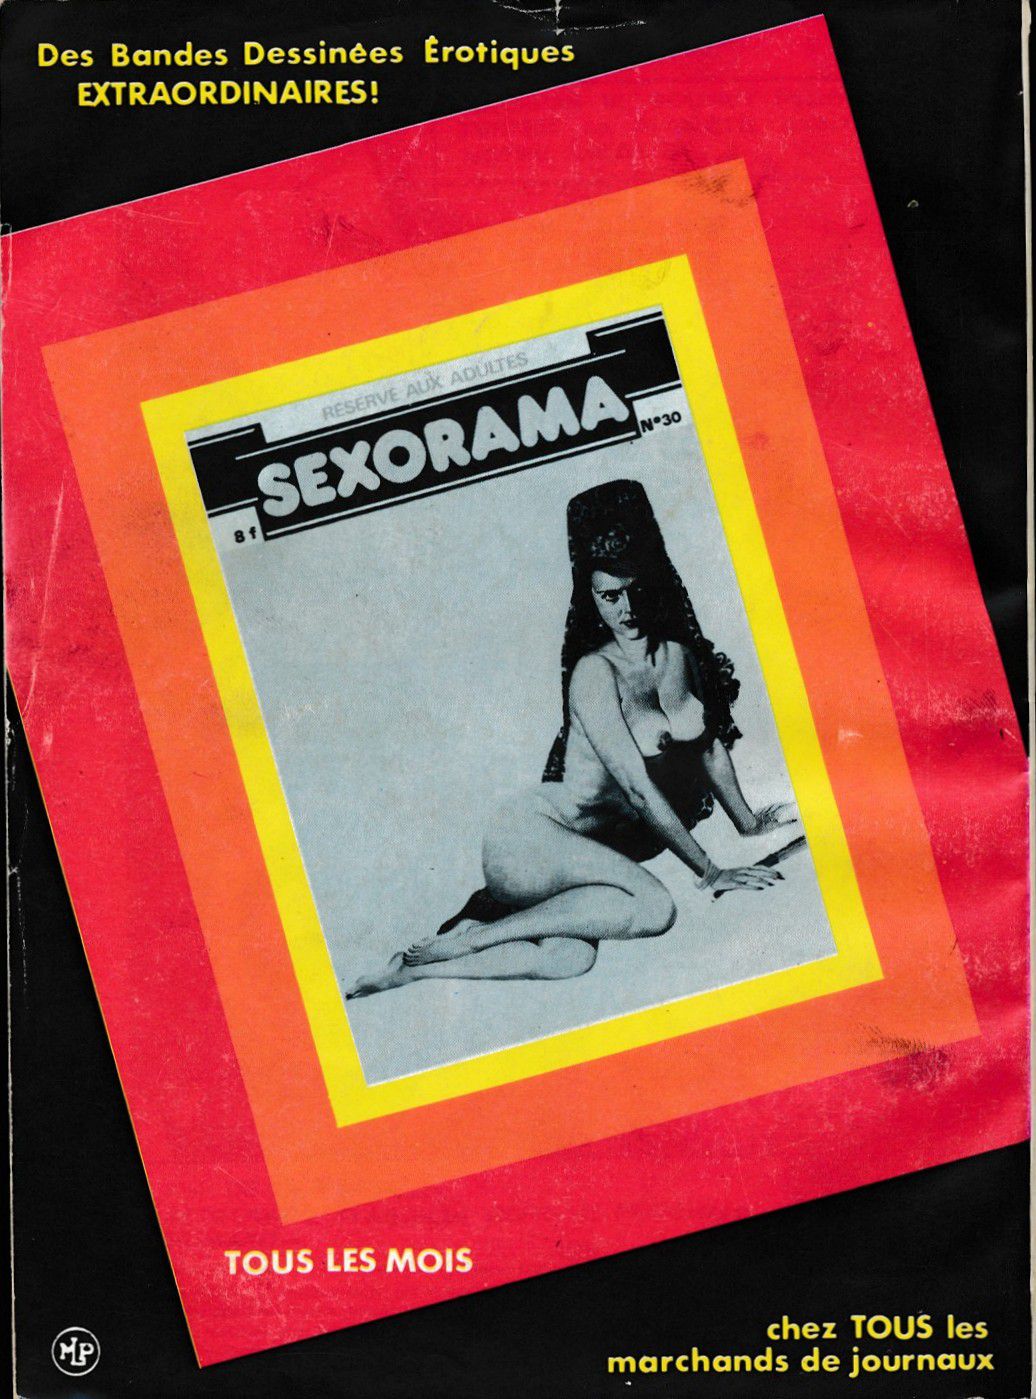 Sexyman 030 [French] 83